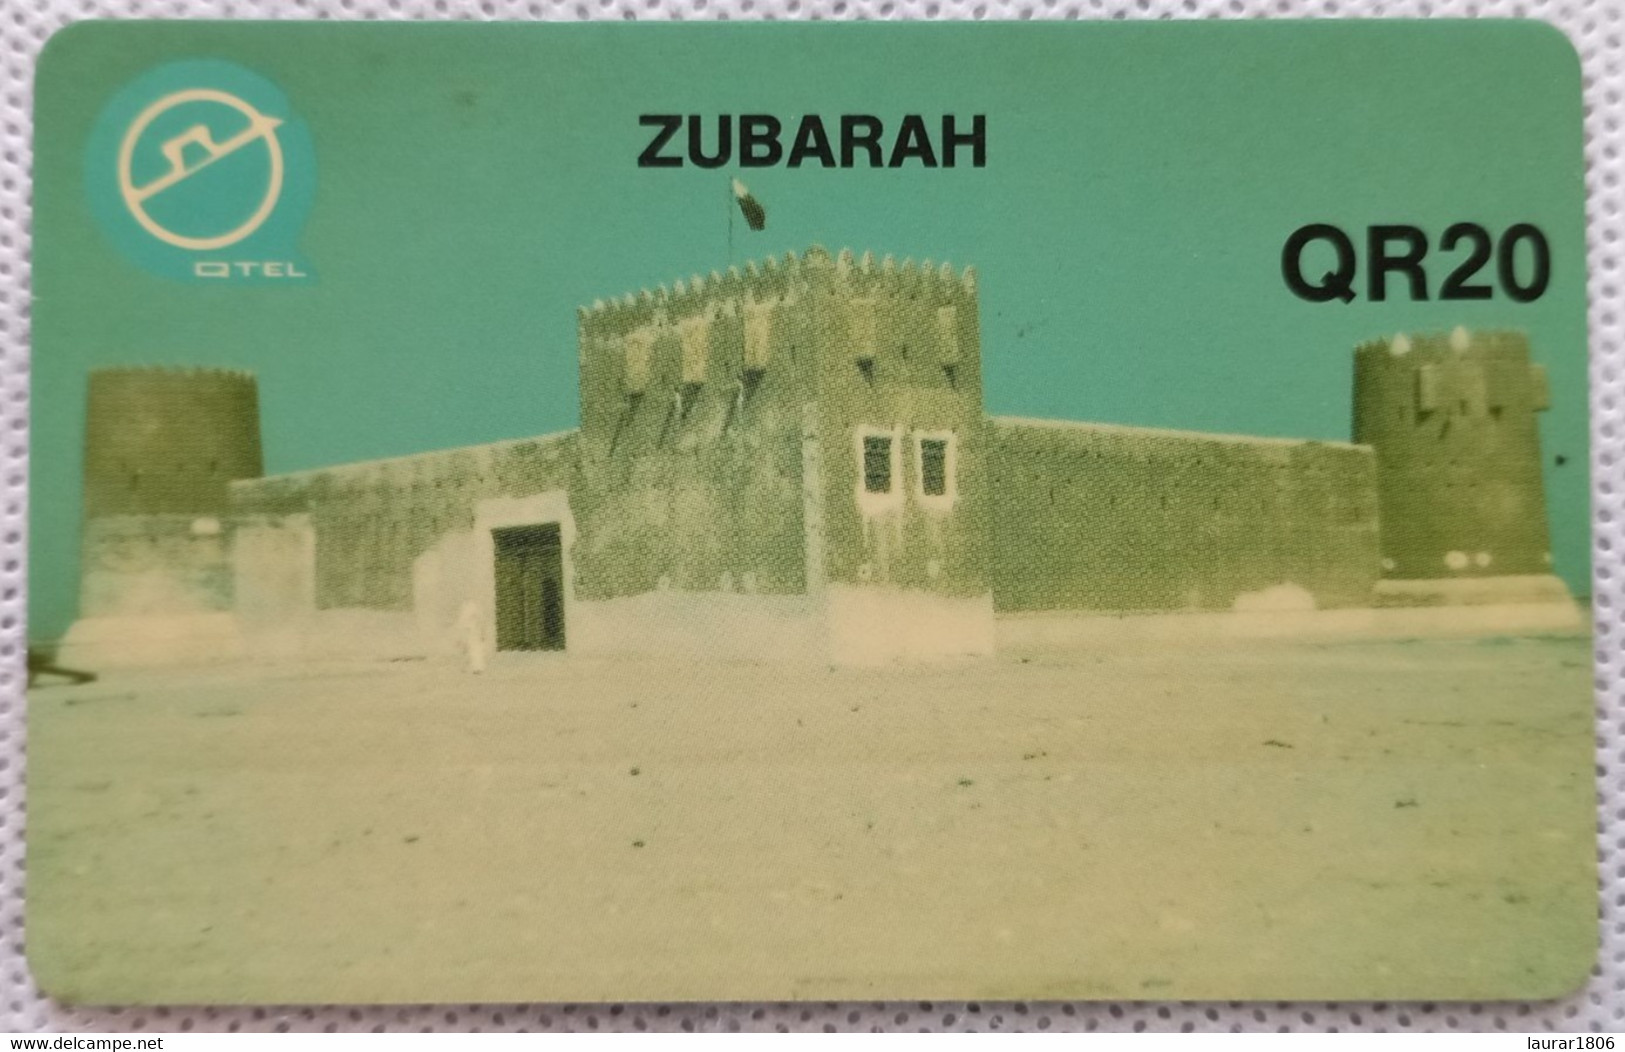 TELECARTE PHONECARD MAGNETIQUE - QATAR TELECOM - ZUBARAH - QR 20 - 1994 - EC - Qatar